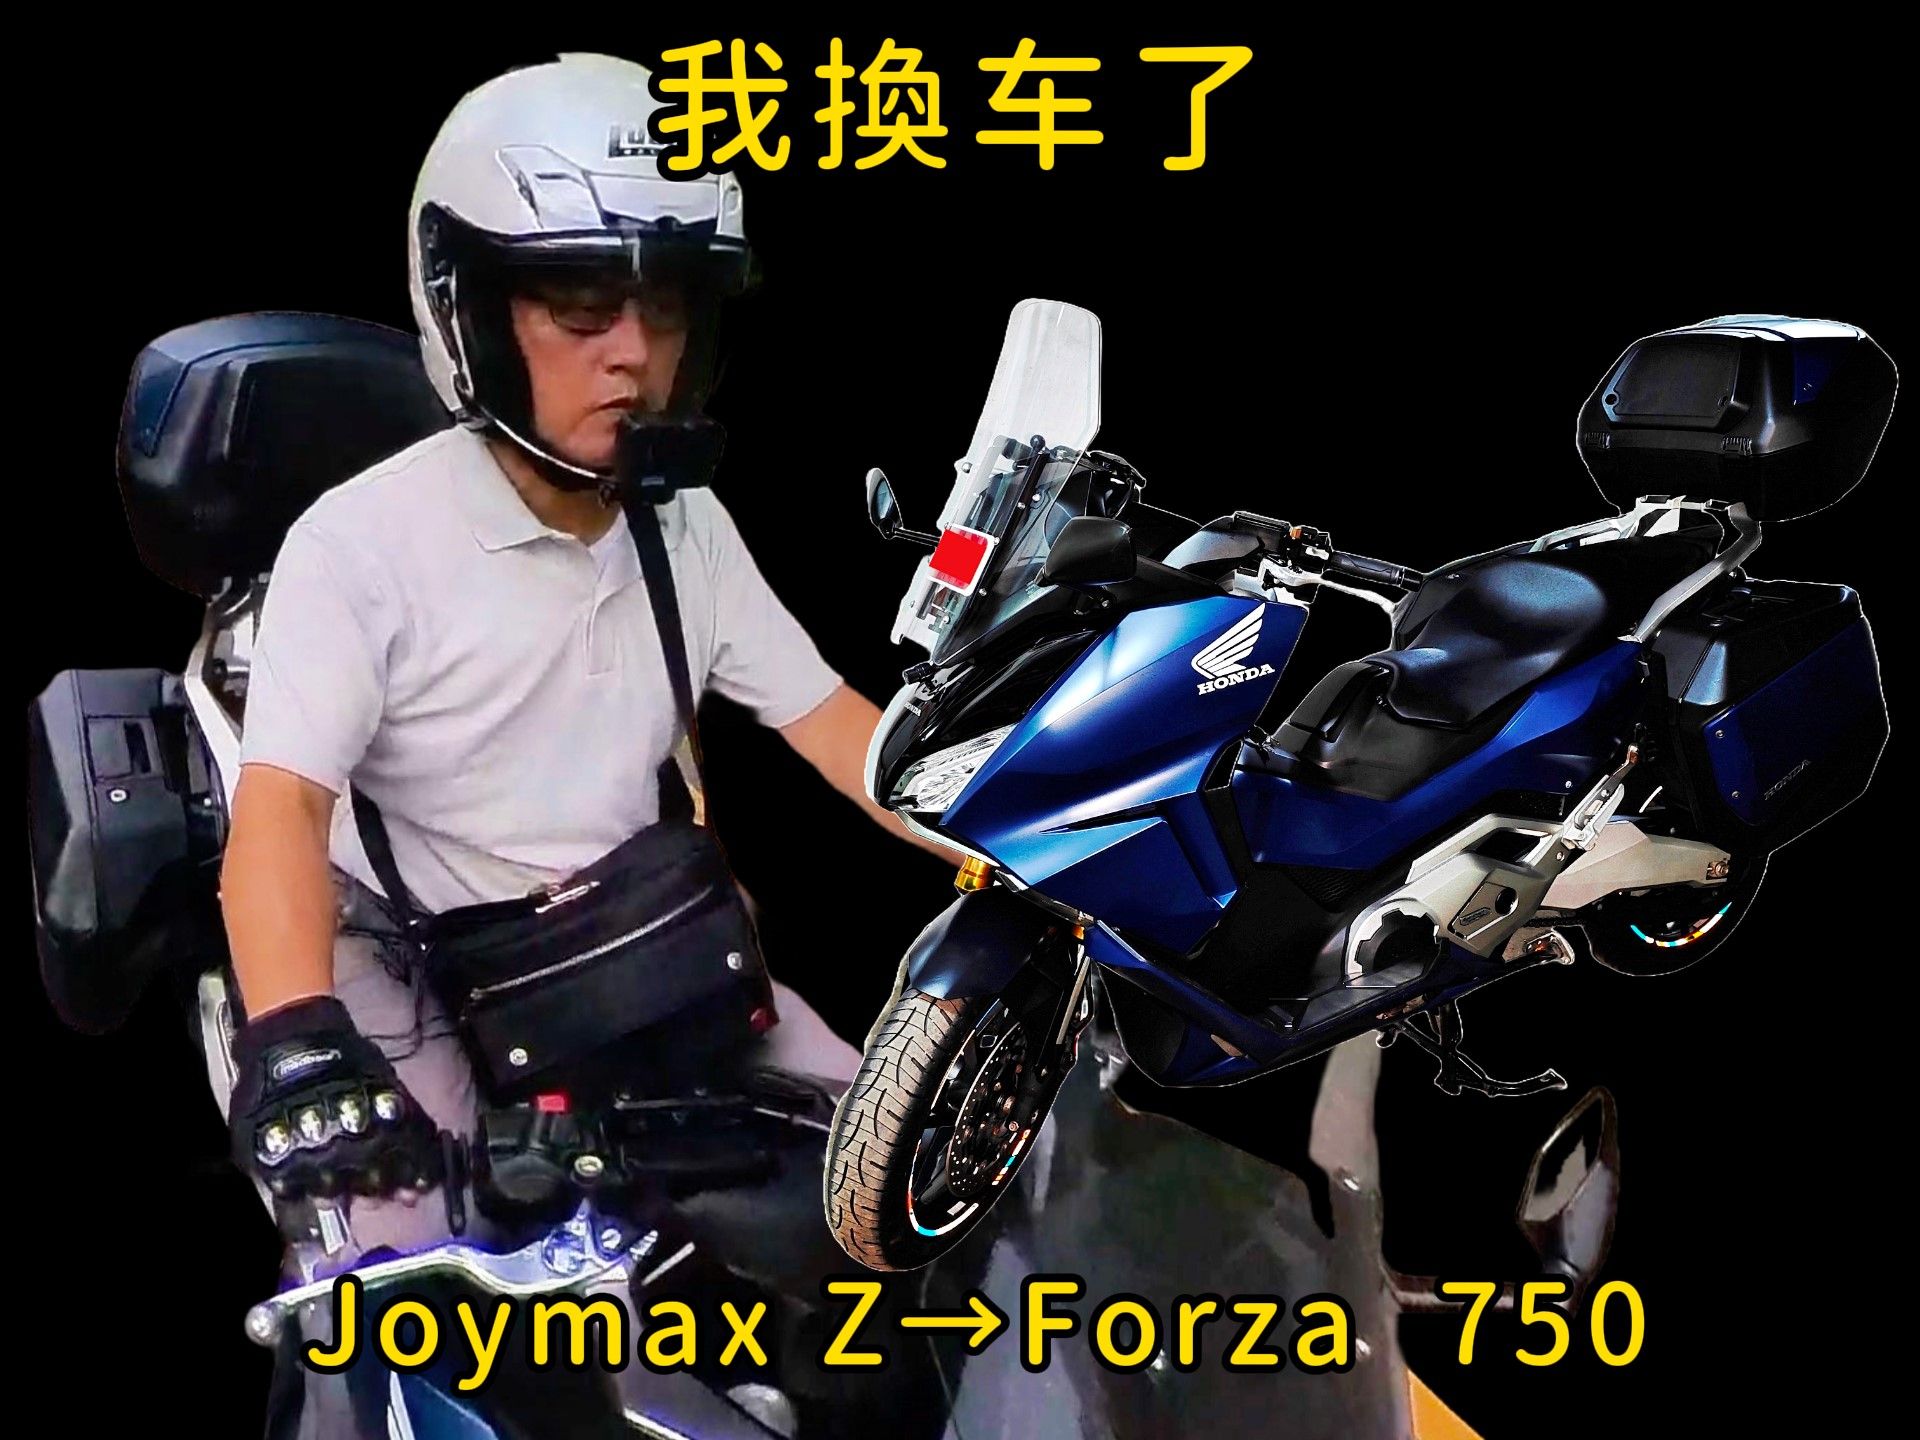 我换车了.SYM Joymax Z300→Honda Forza750三箱版